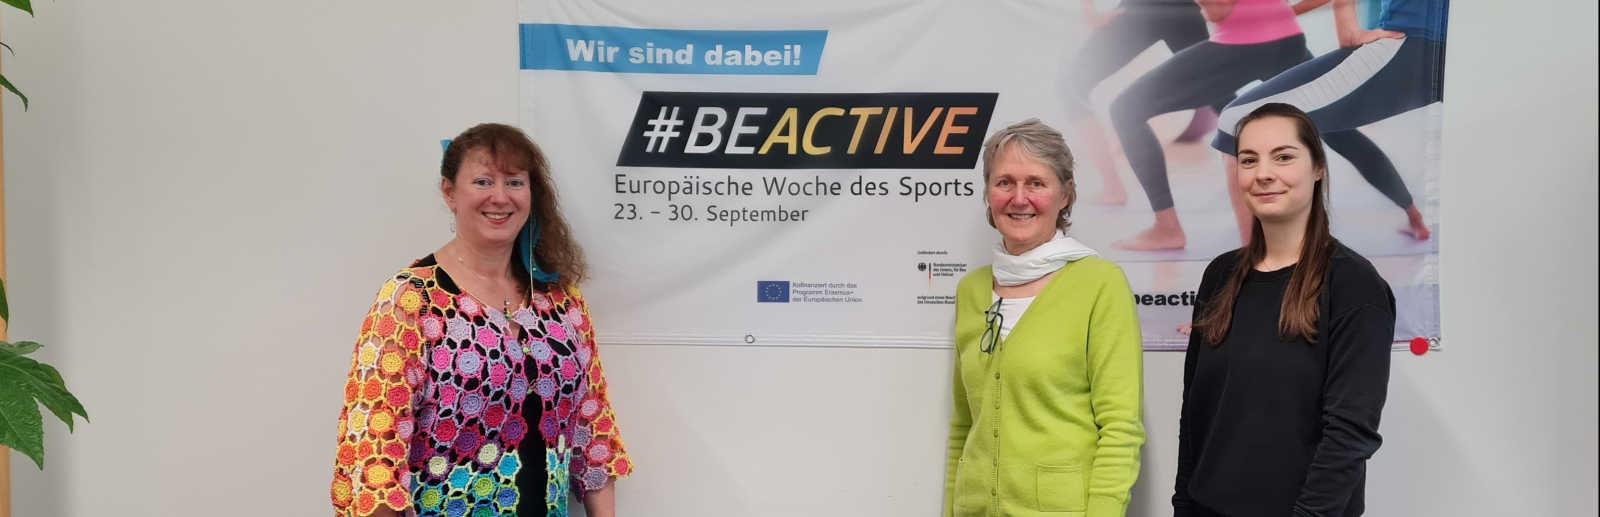 Andrea Milz und zwei Frauen vor dem #BeActive-Banner